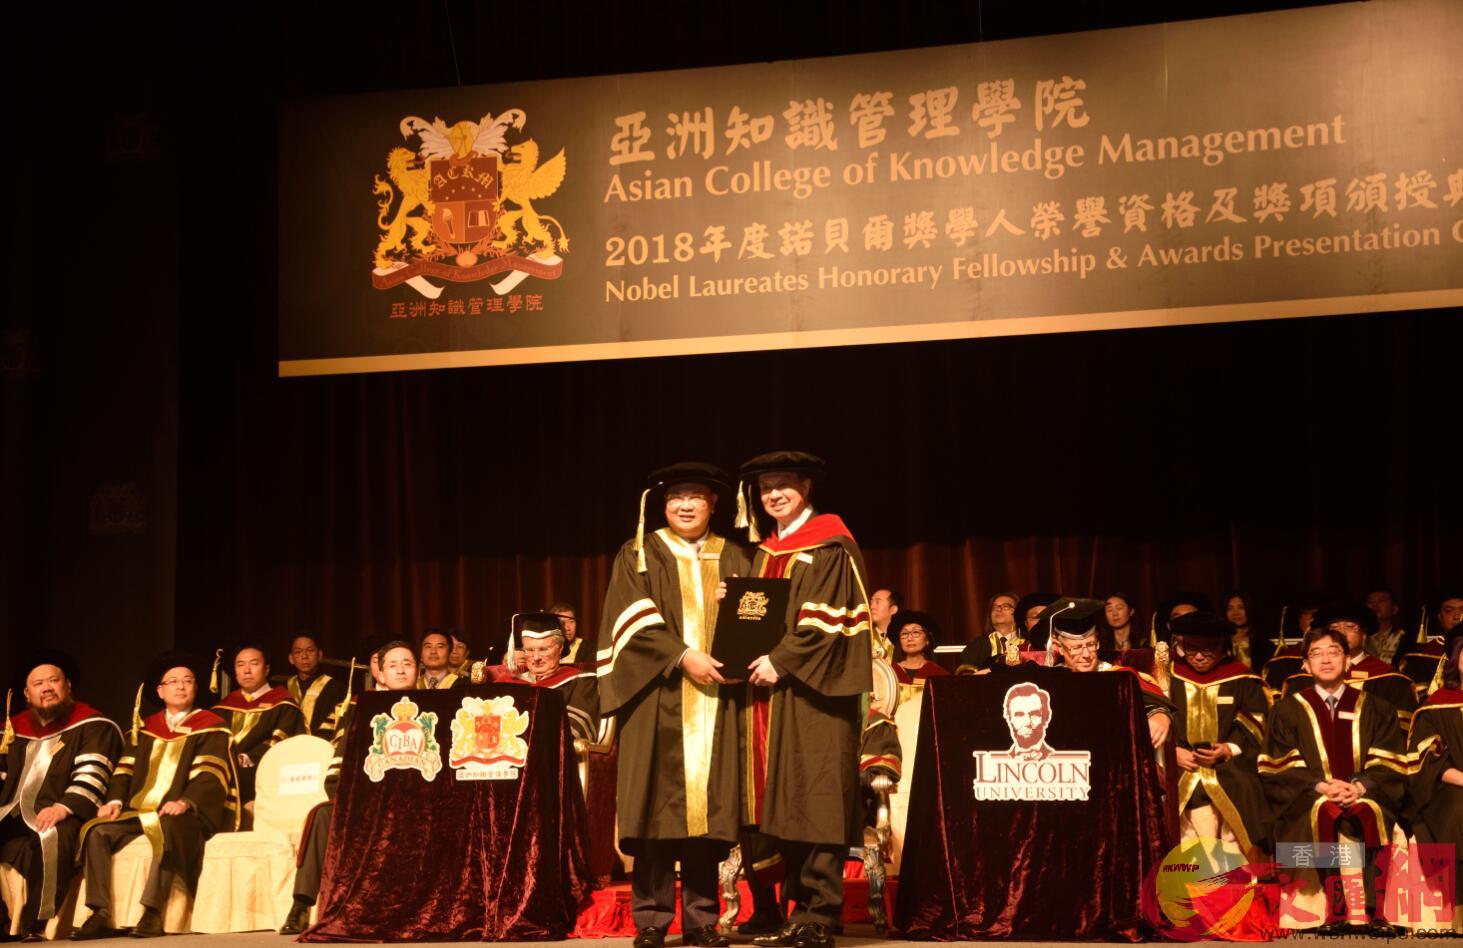 林曉輝博士獲頒2018年度諾貝爾獎學人榮譽院士資格C